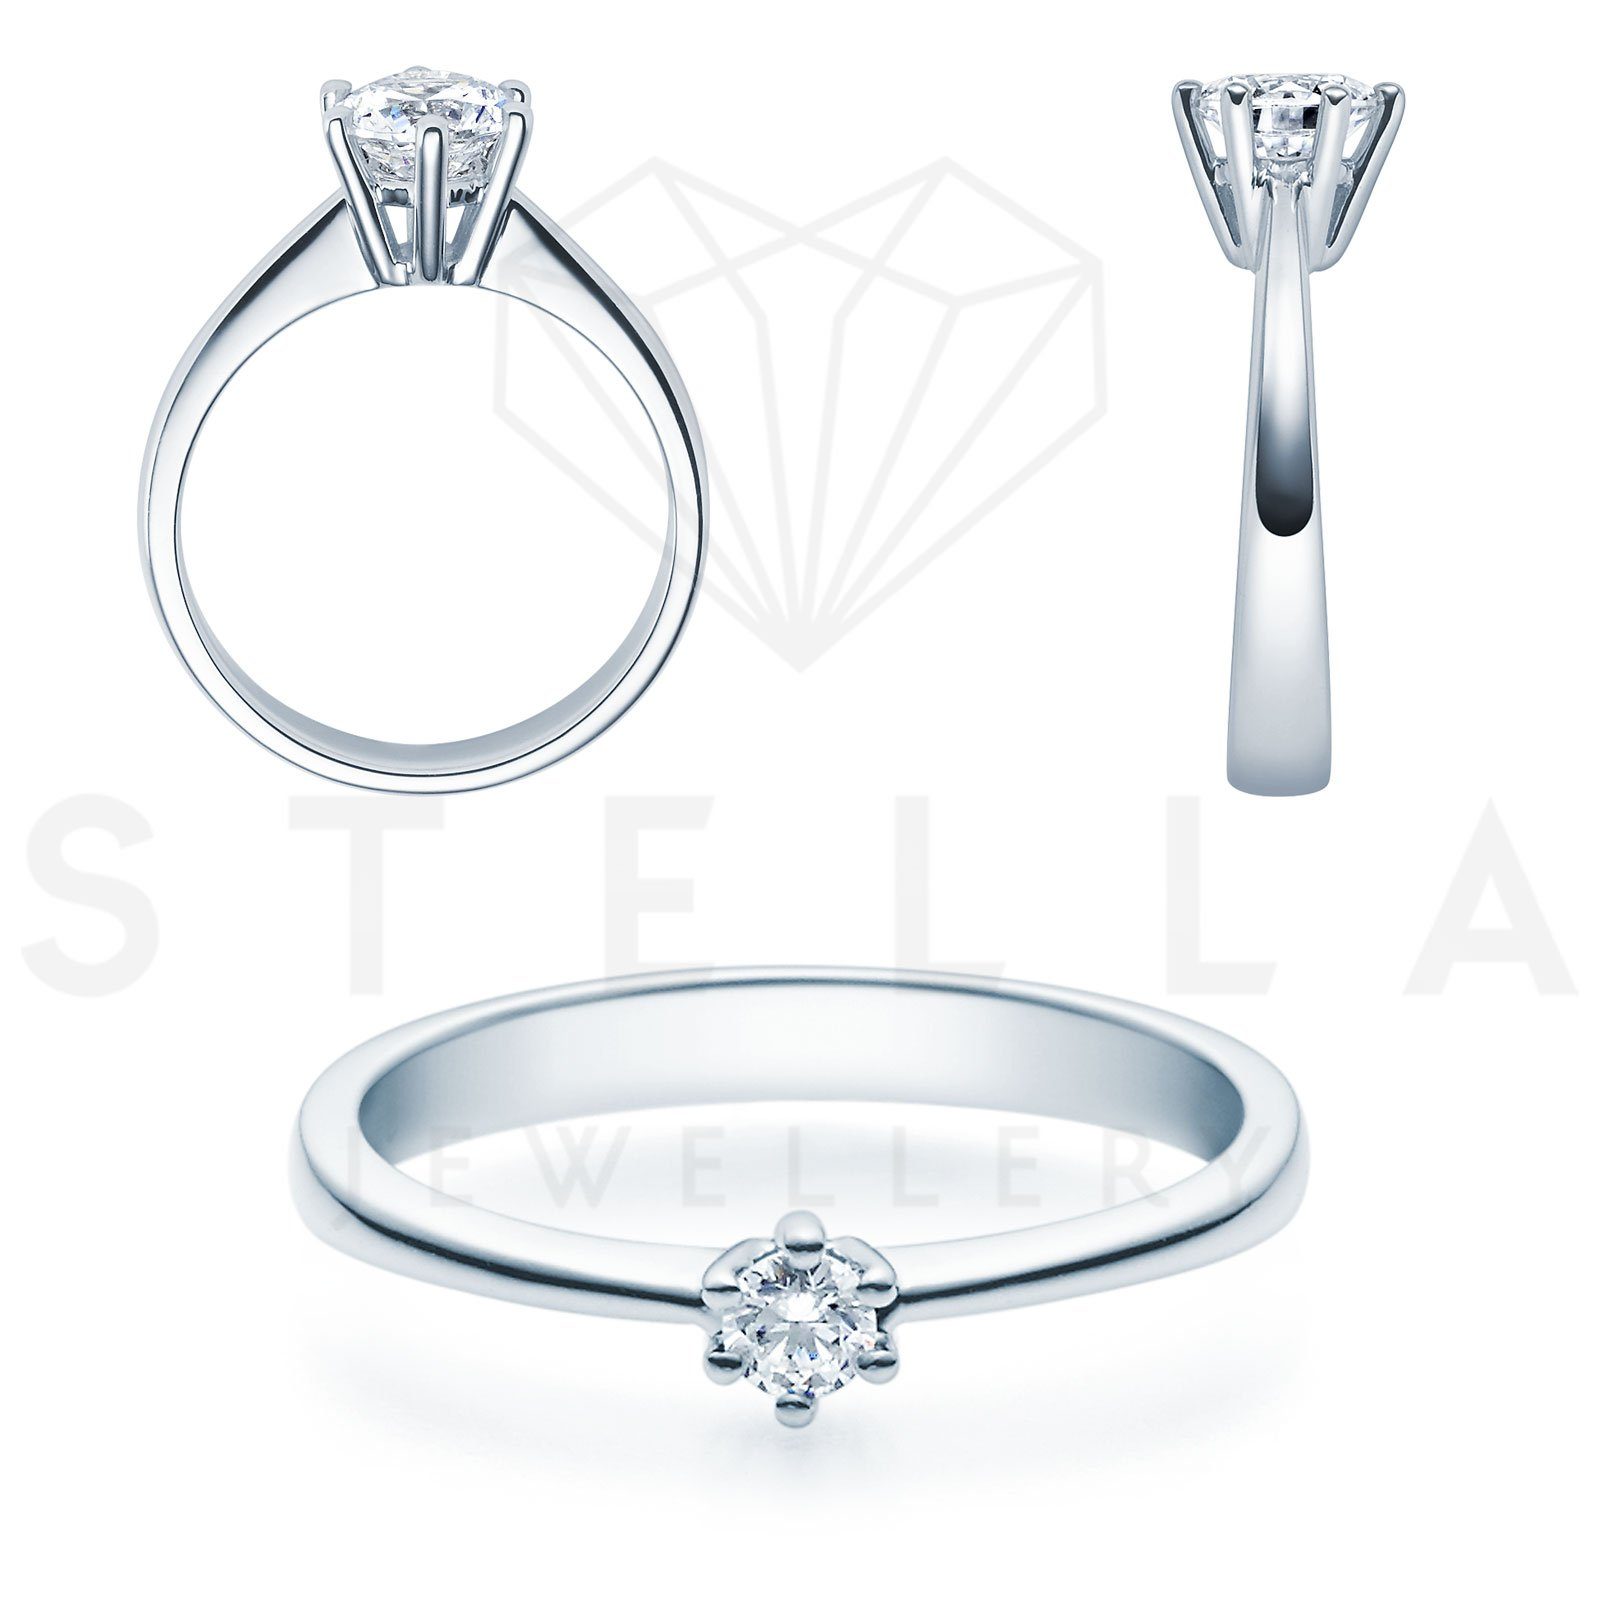 Stella-Jewellery Verlobungsring Verlobungsring 585er Weißgold Diamant Gr. 54 (inkl. Etui), mit Brillant 0,15ct. - Poliert